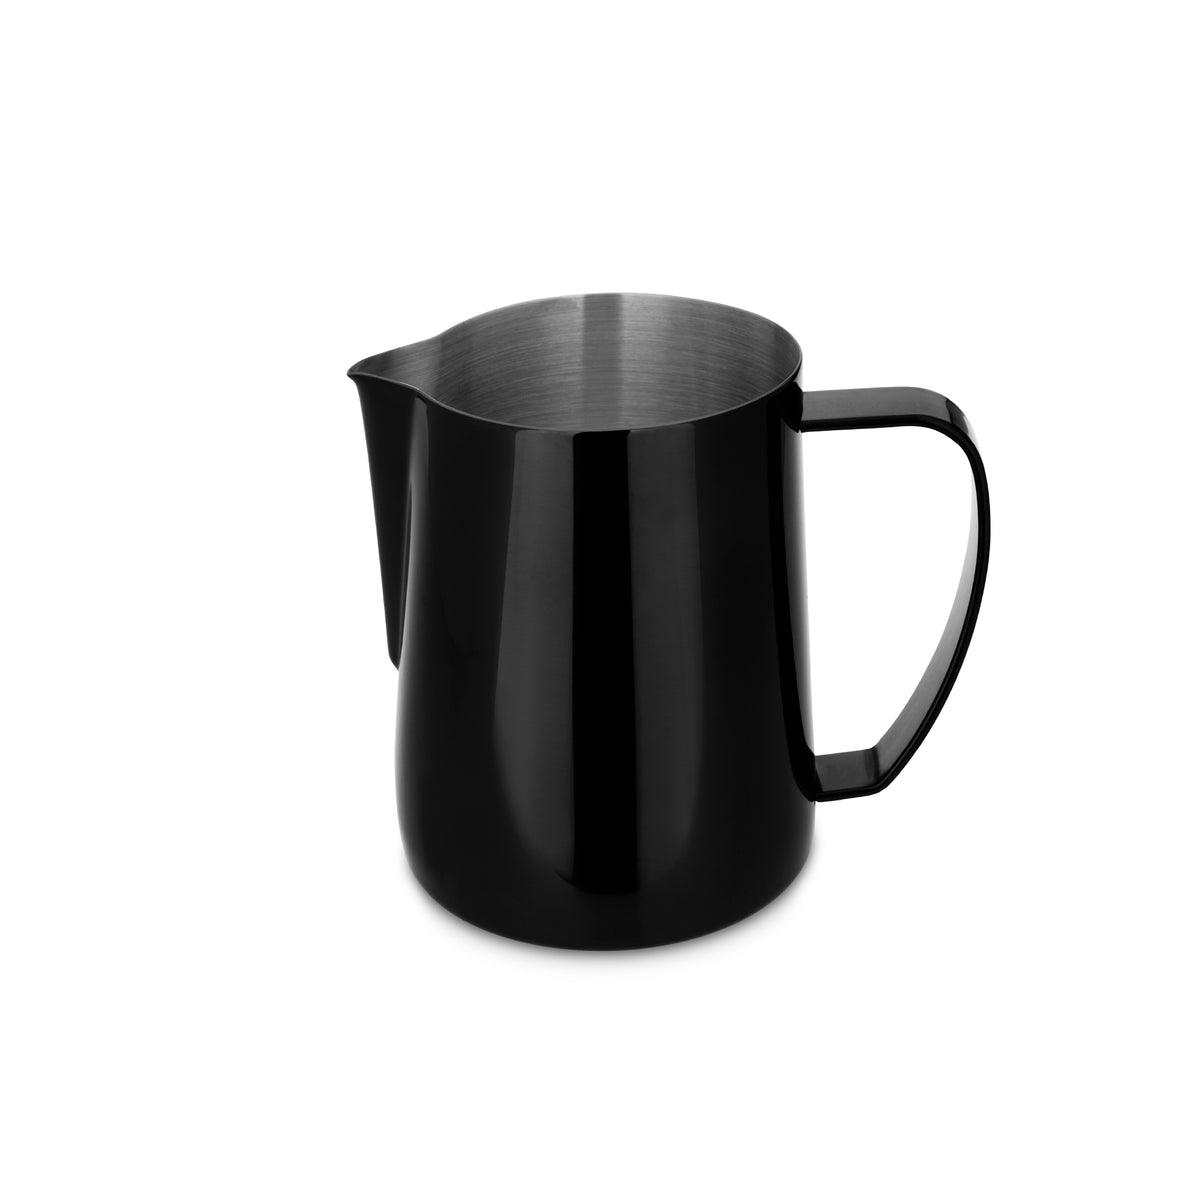 EspressoWorks Stainless Steel Milk Frothing Jug - Black (600ml)